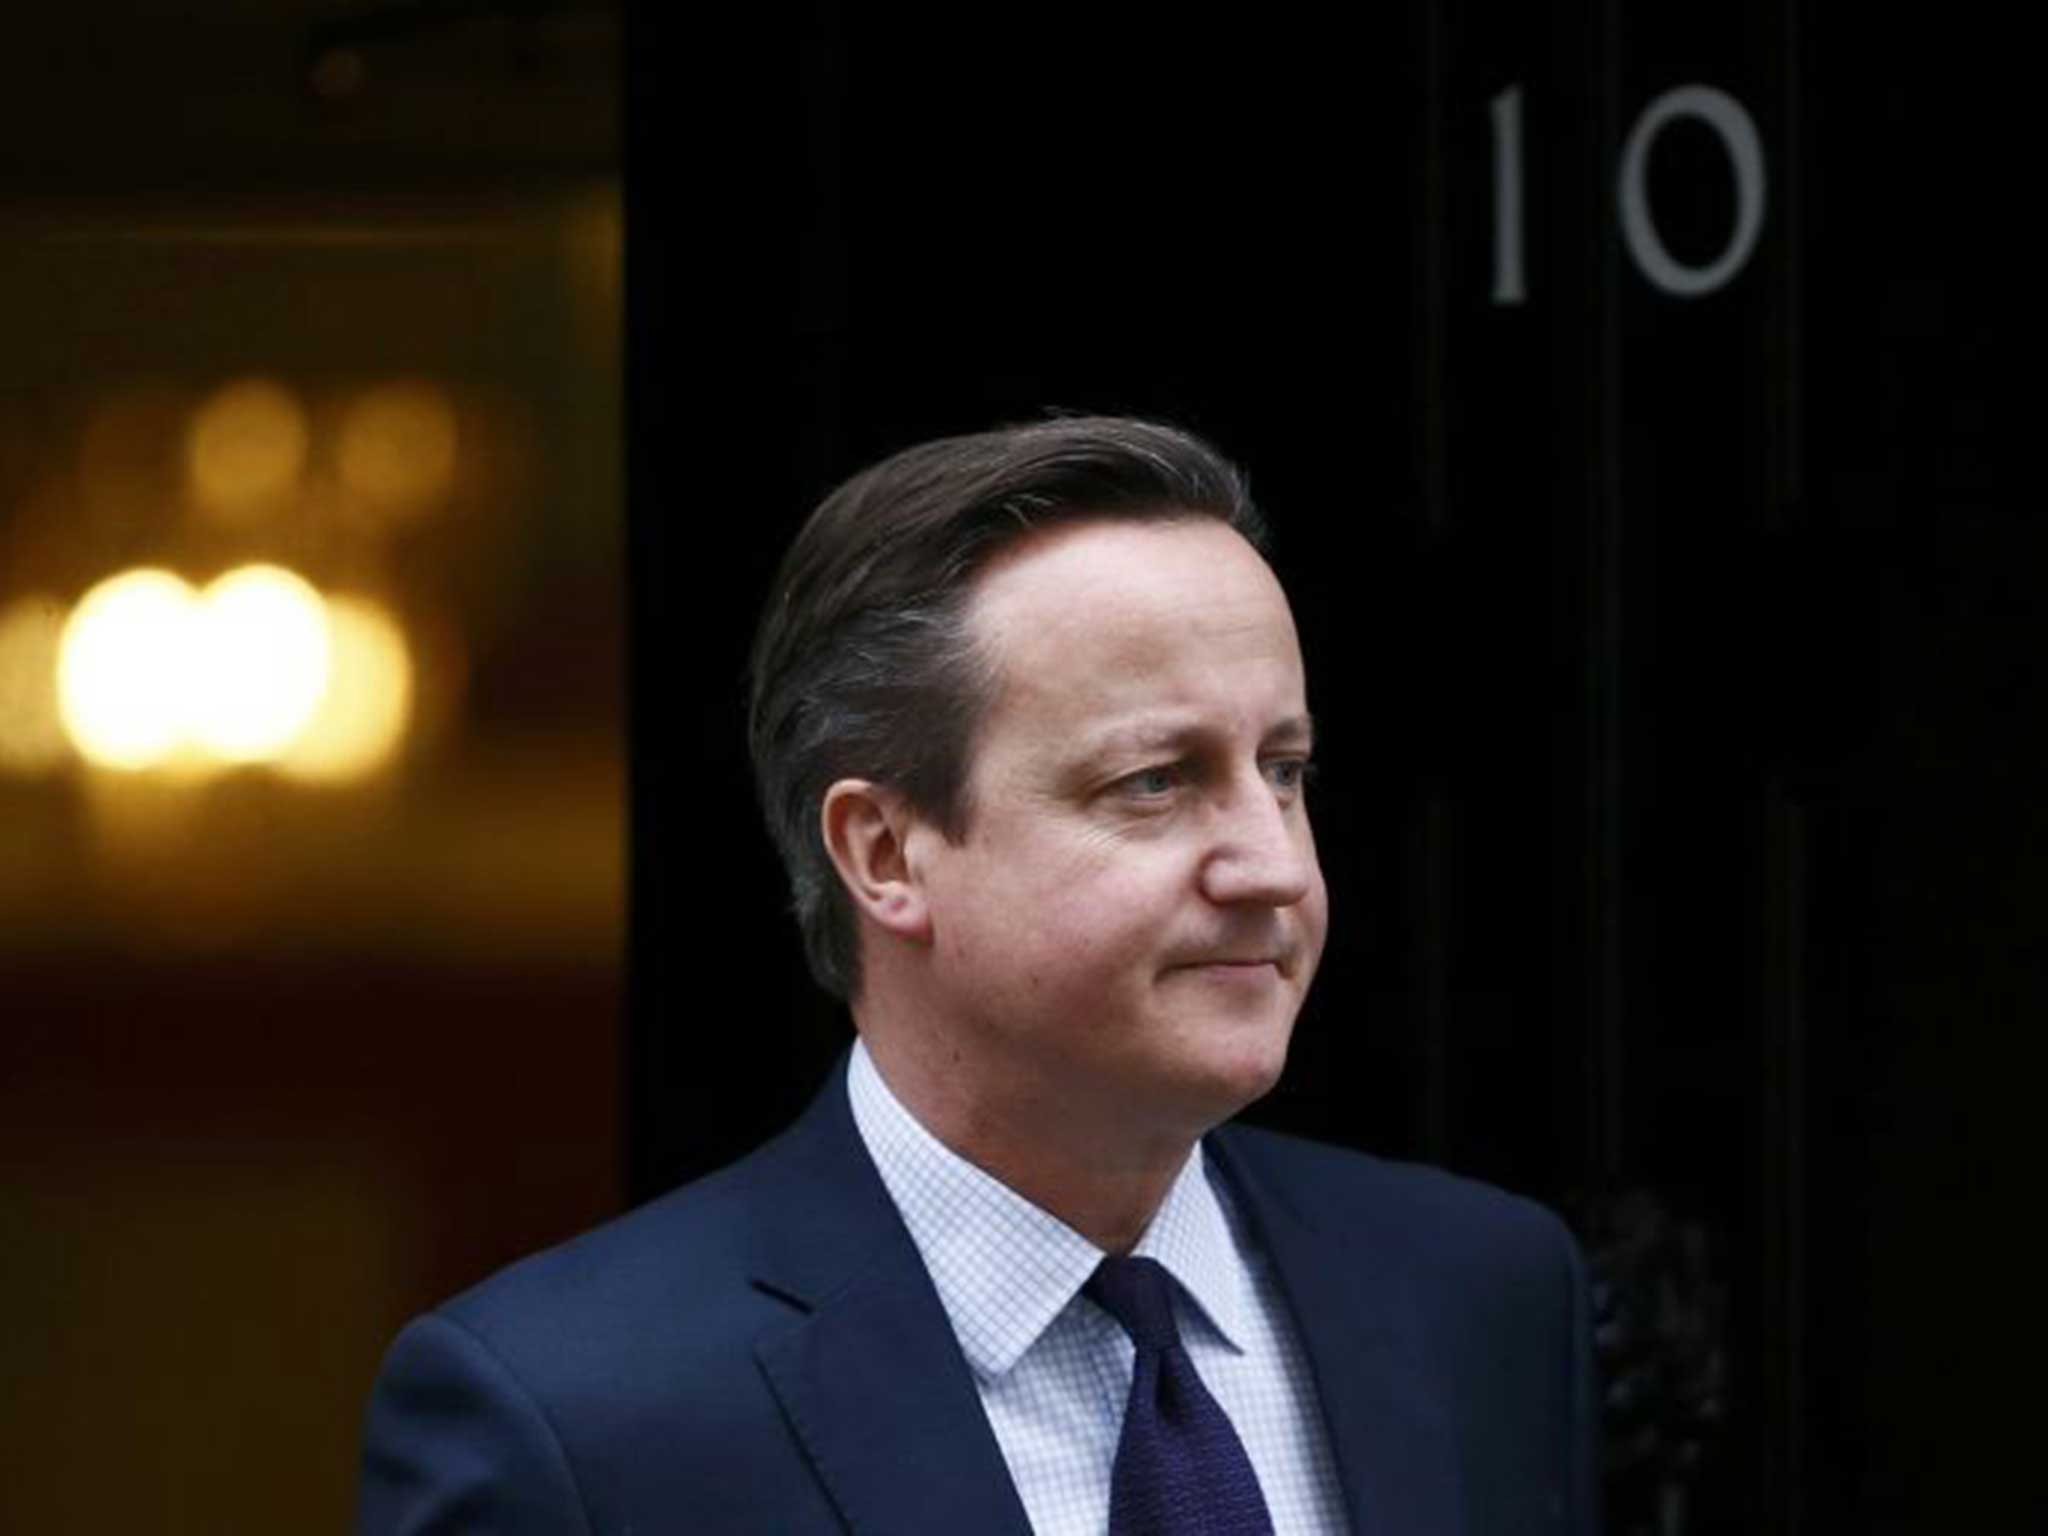 Cameron hailed the UN vote as a 'breakthrough'